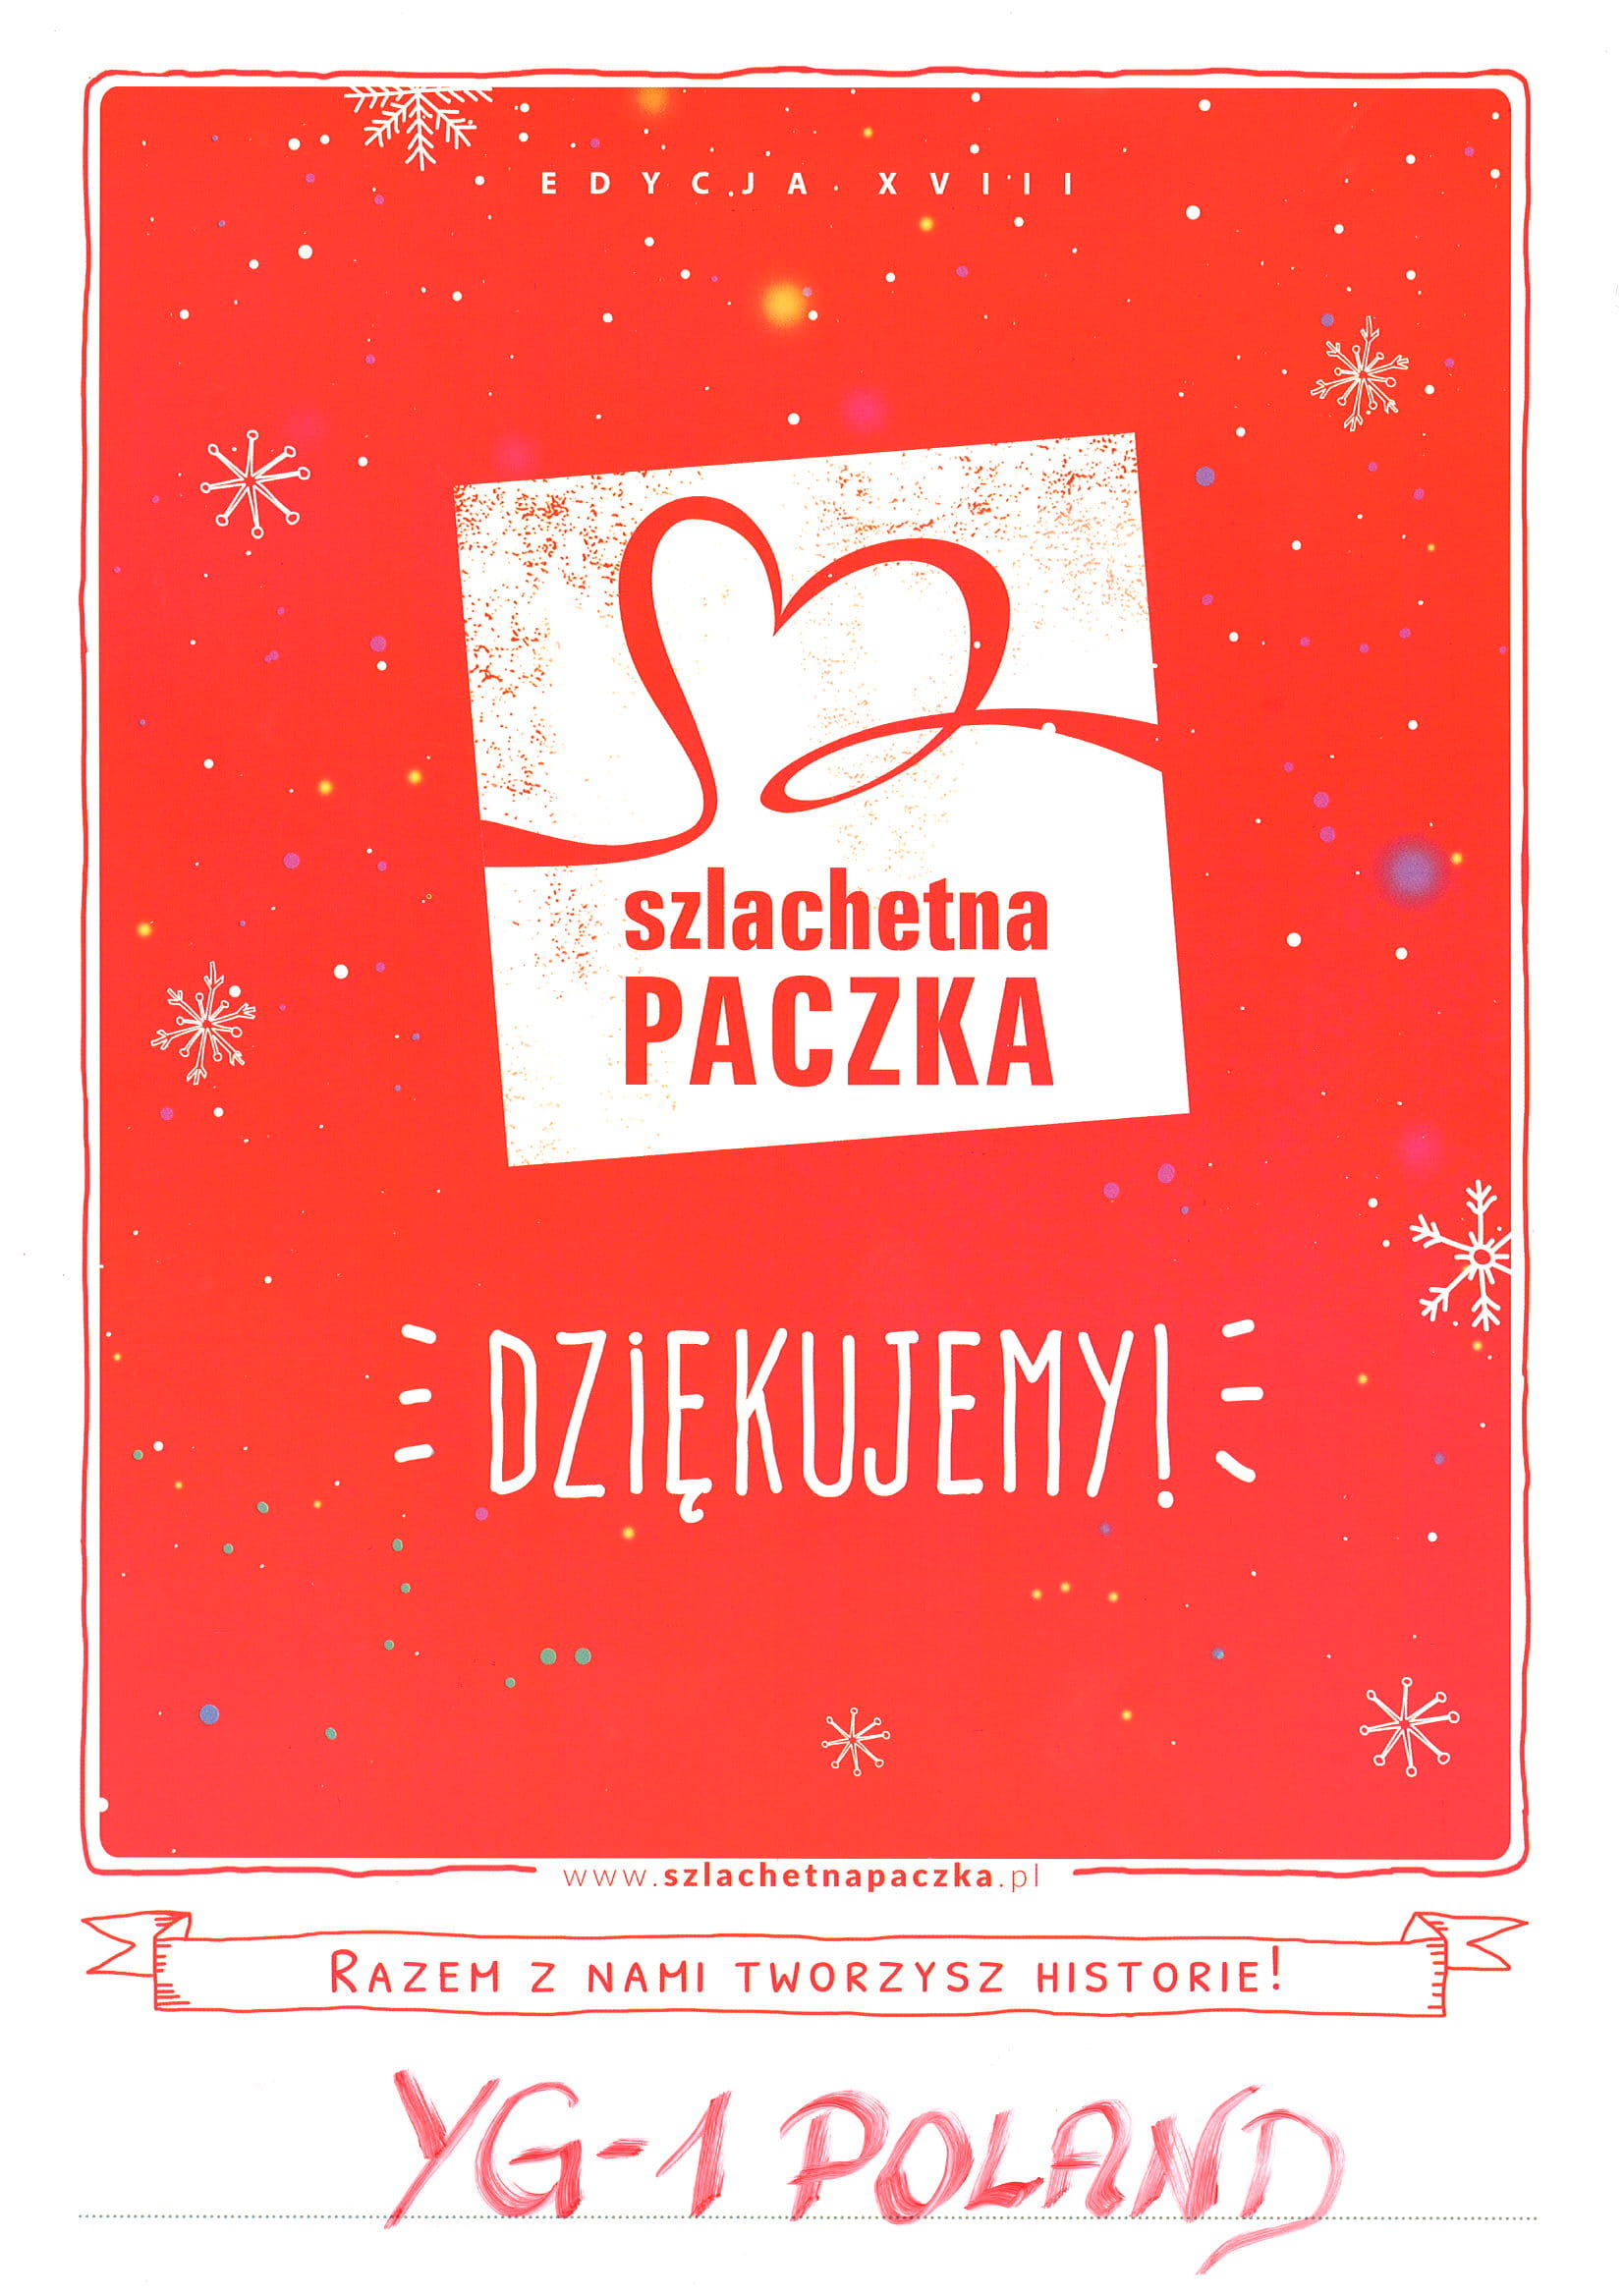 Szlachetna Paczka 2018 - YG-1